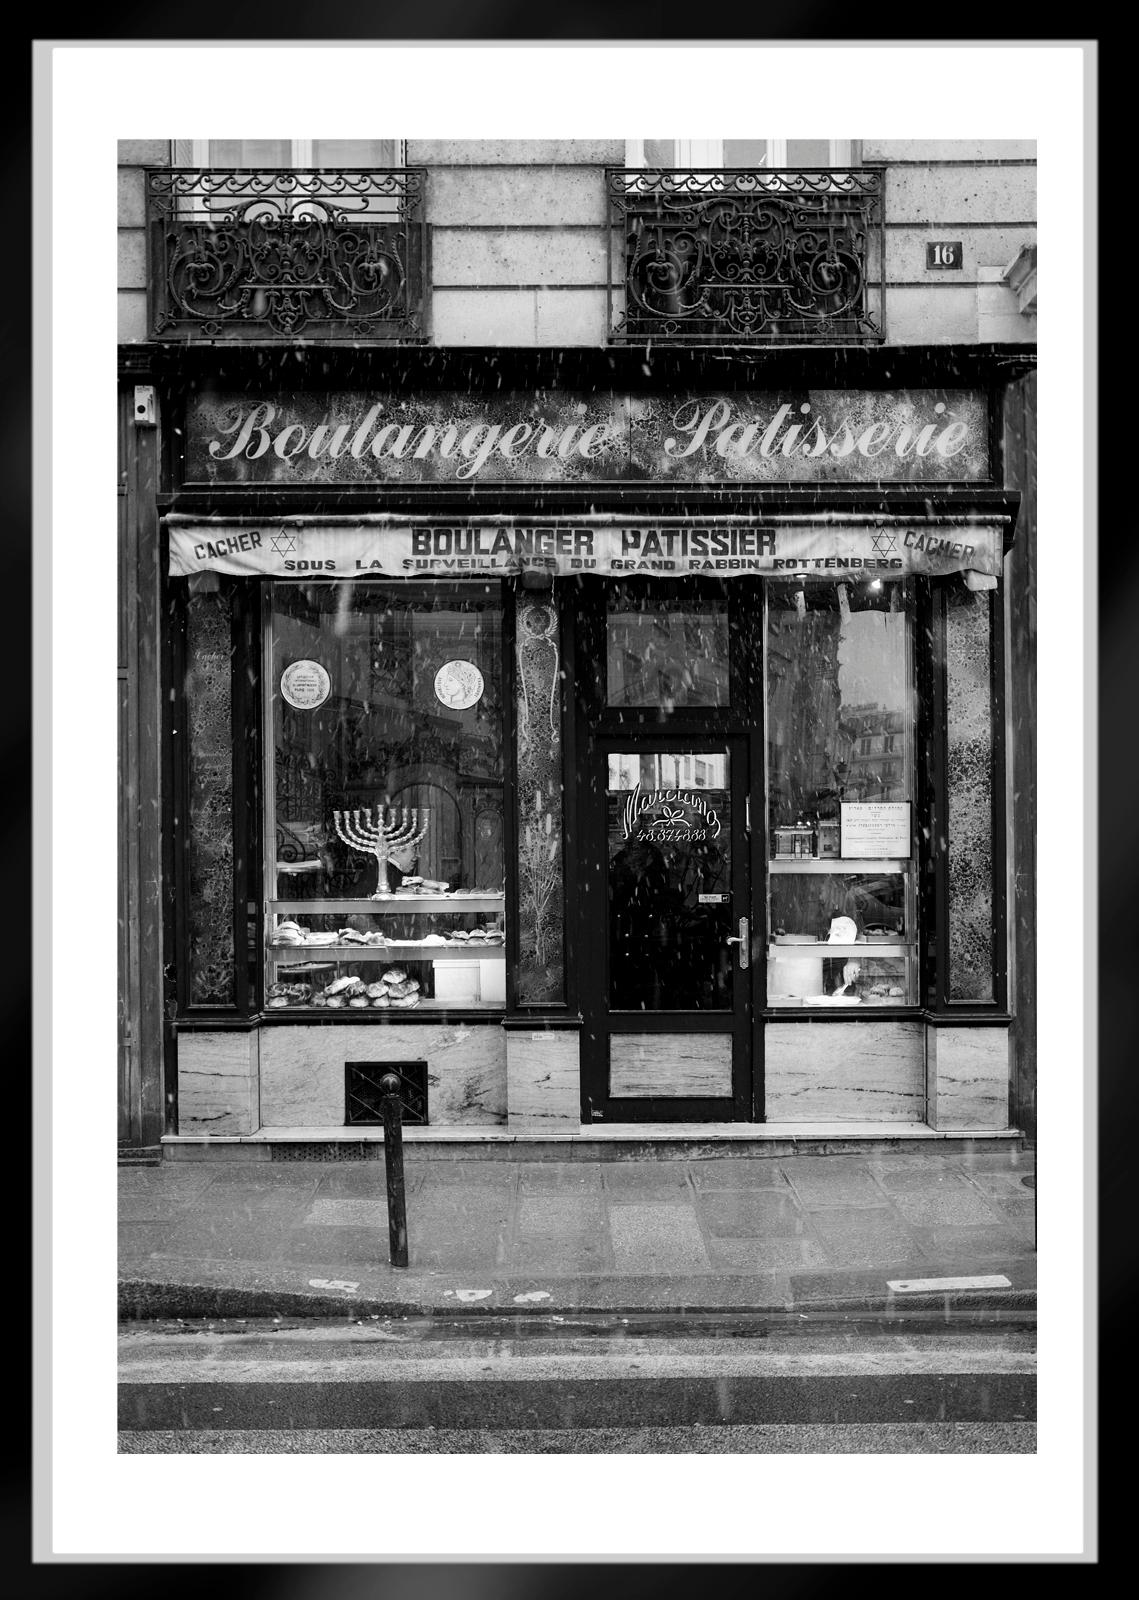 Le Marais-Signed limited edition fine art print, Black white architecture, Paris - Contemporary Photograph by Ian Sanderson